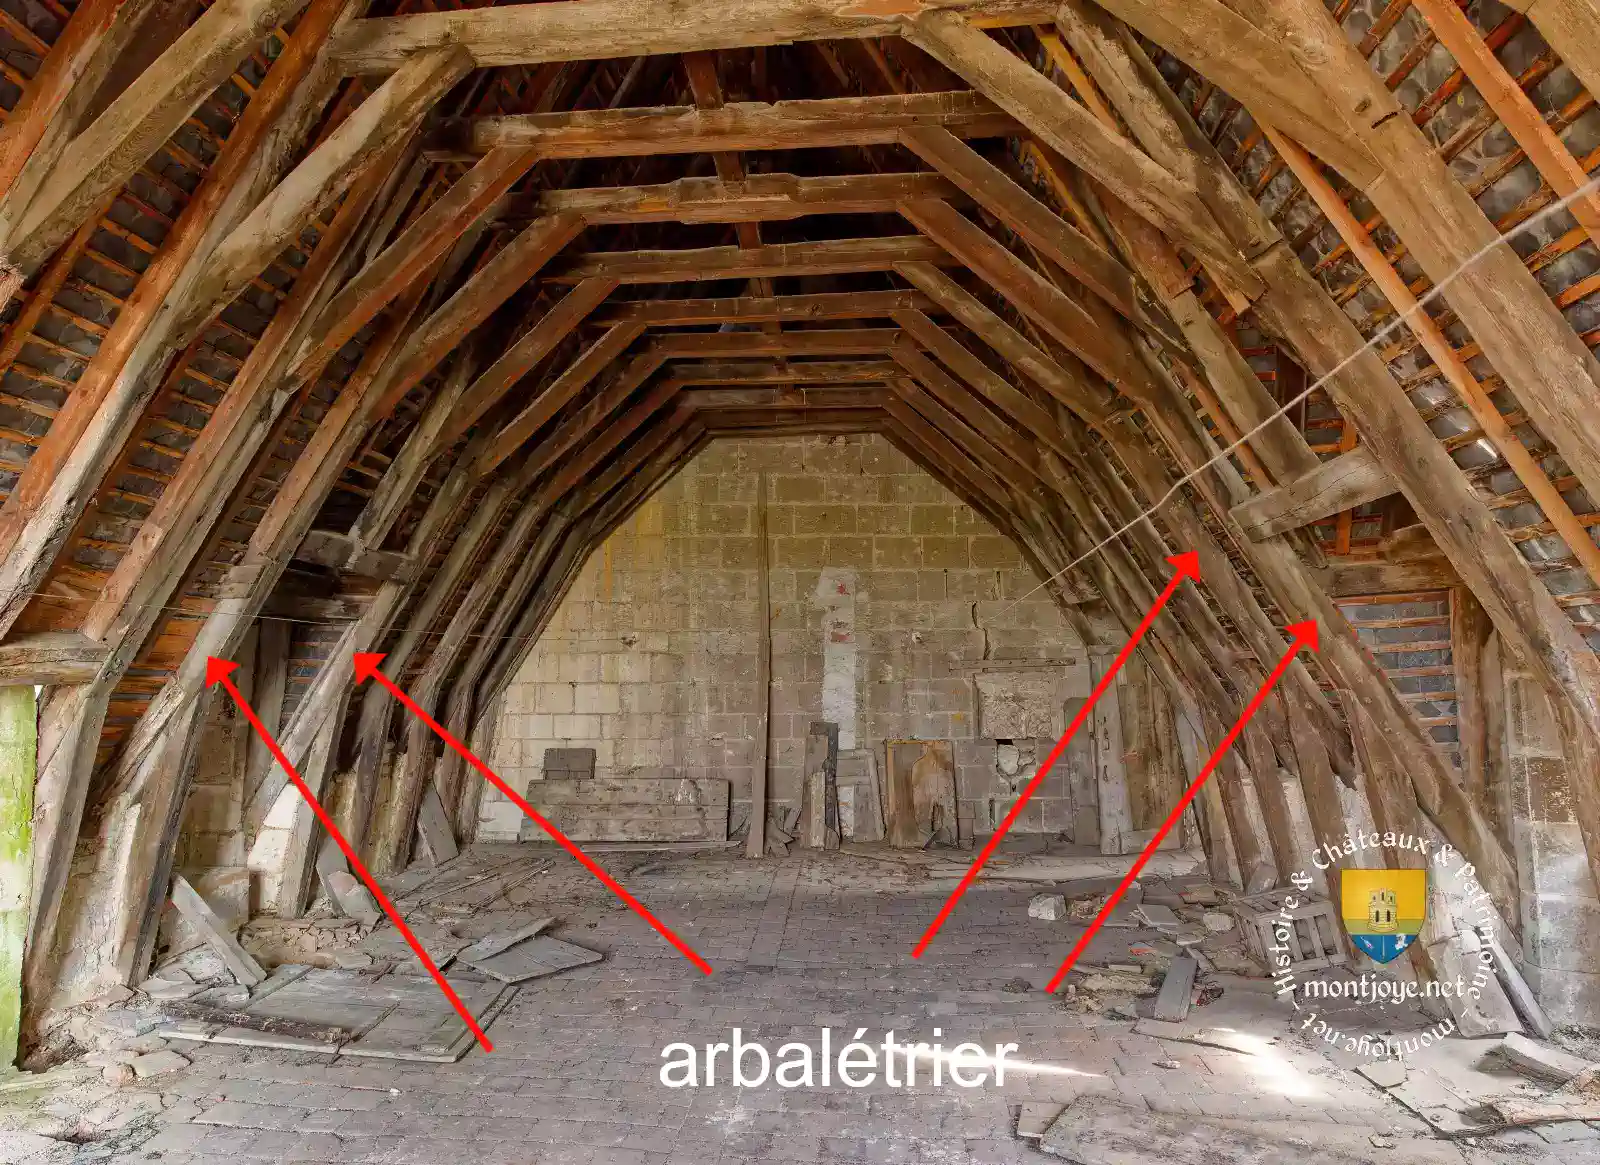 arbaletrier voute architecture medievale